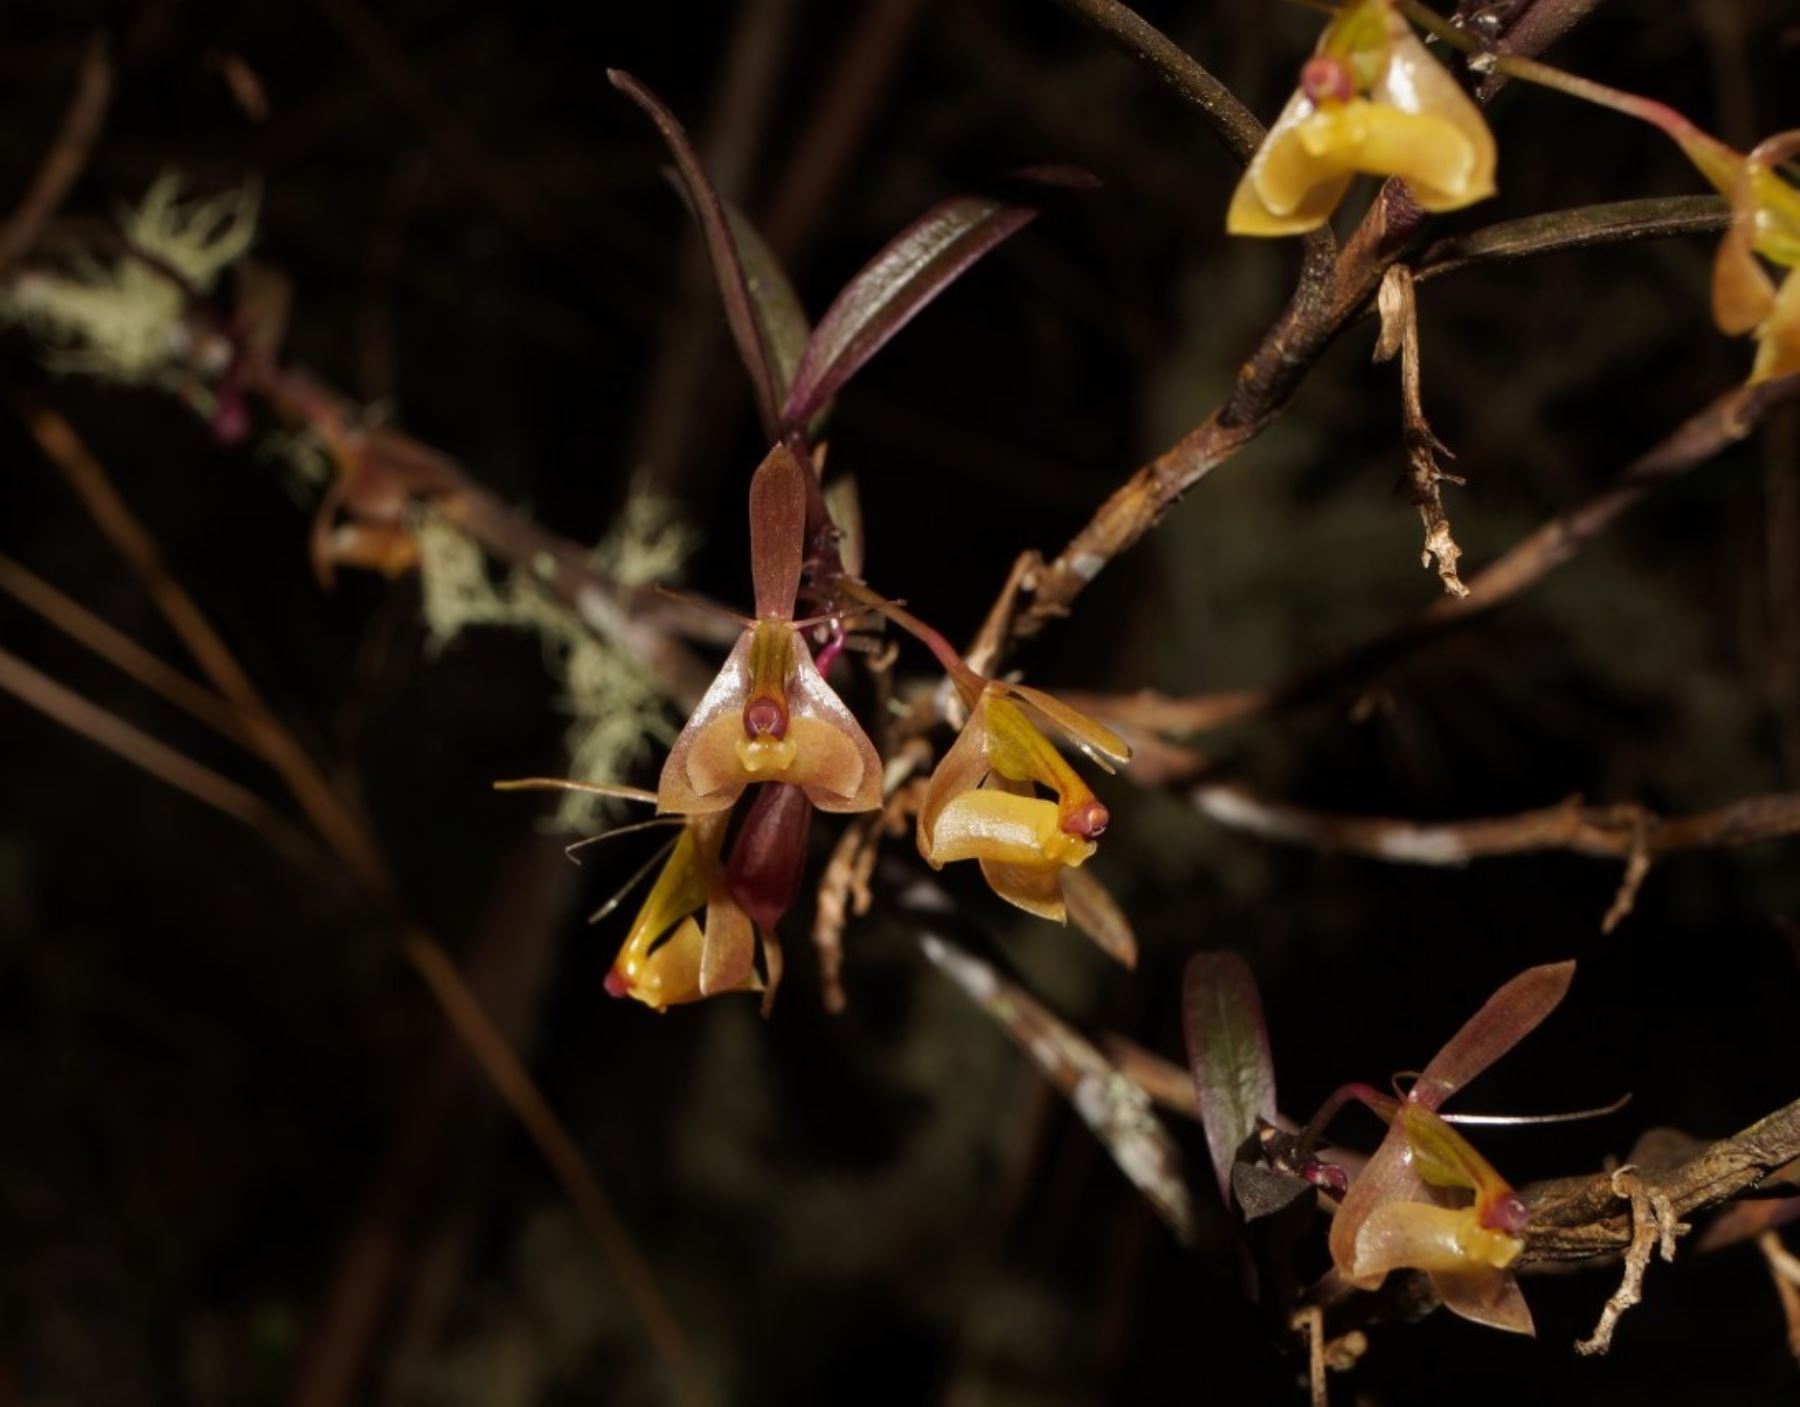 Científicos descubrieron seis nuevas variedades de orquídeas en el Bosque de Protección Alto Mayo, área natural protegida ubcada en la región San Martín.